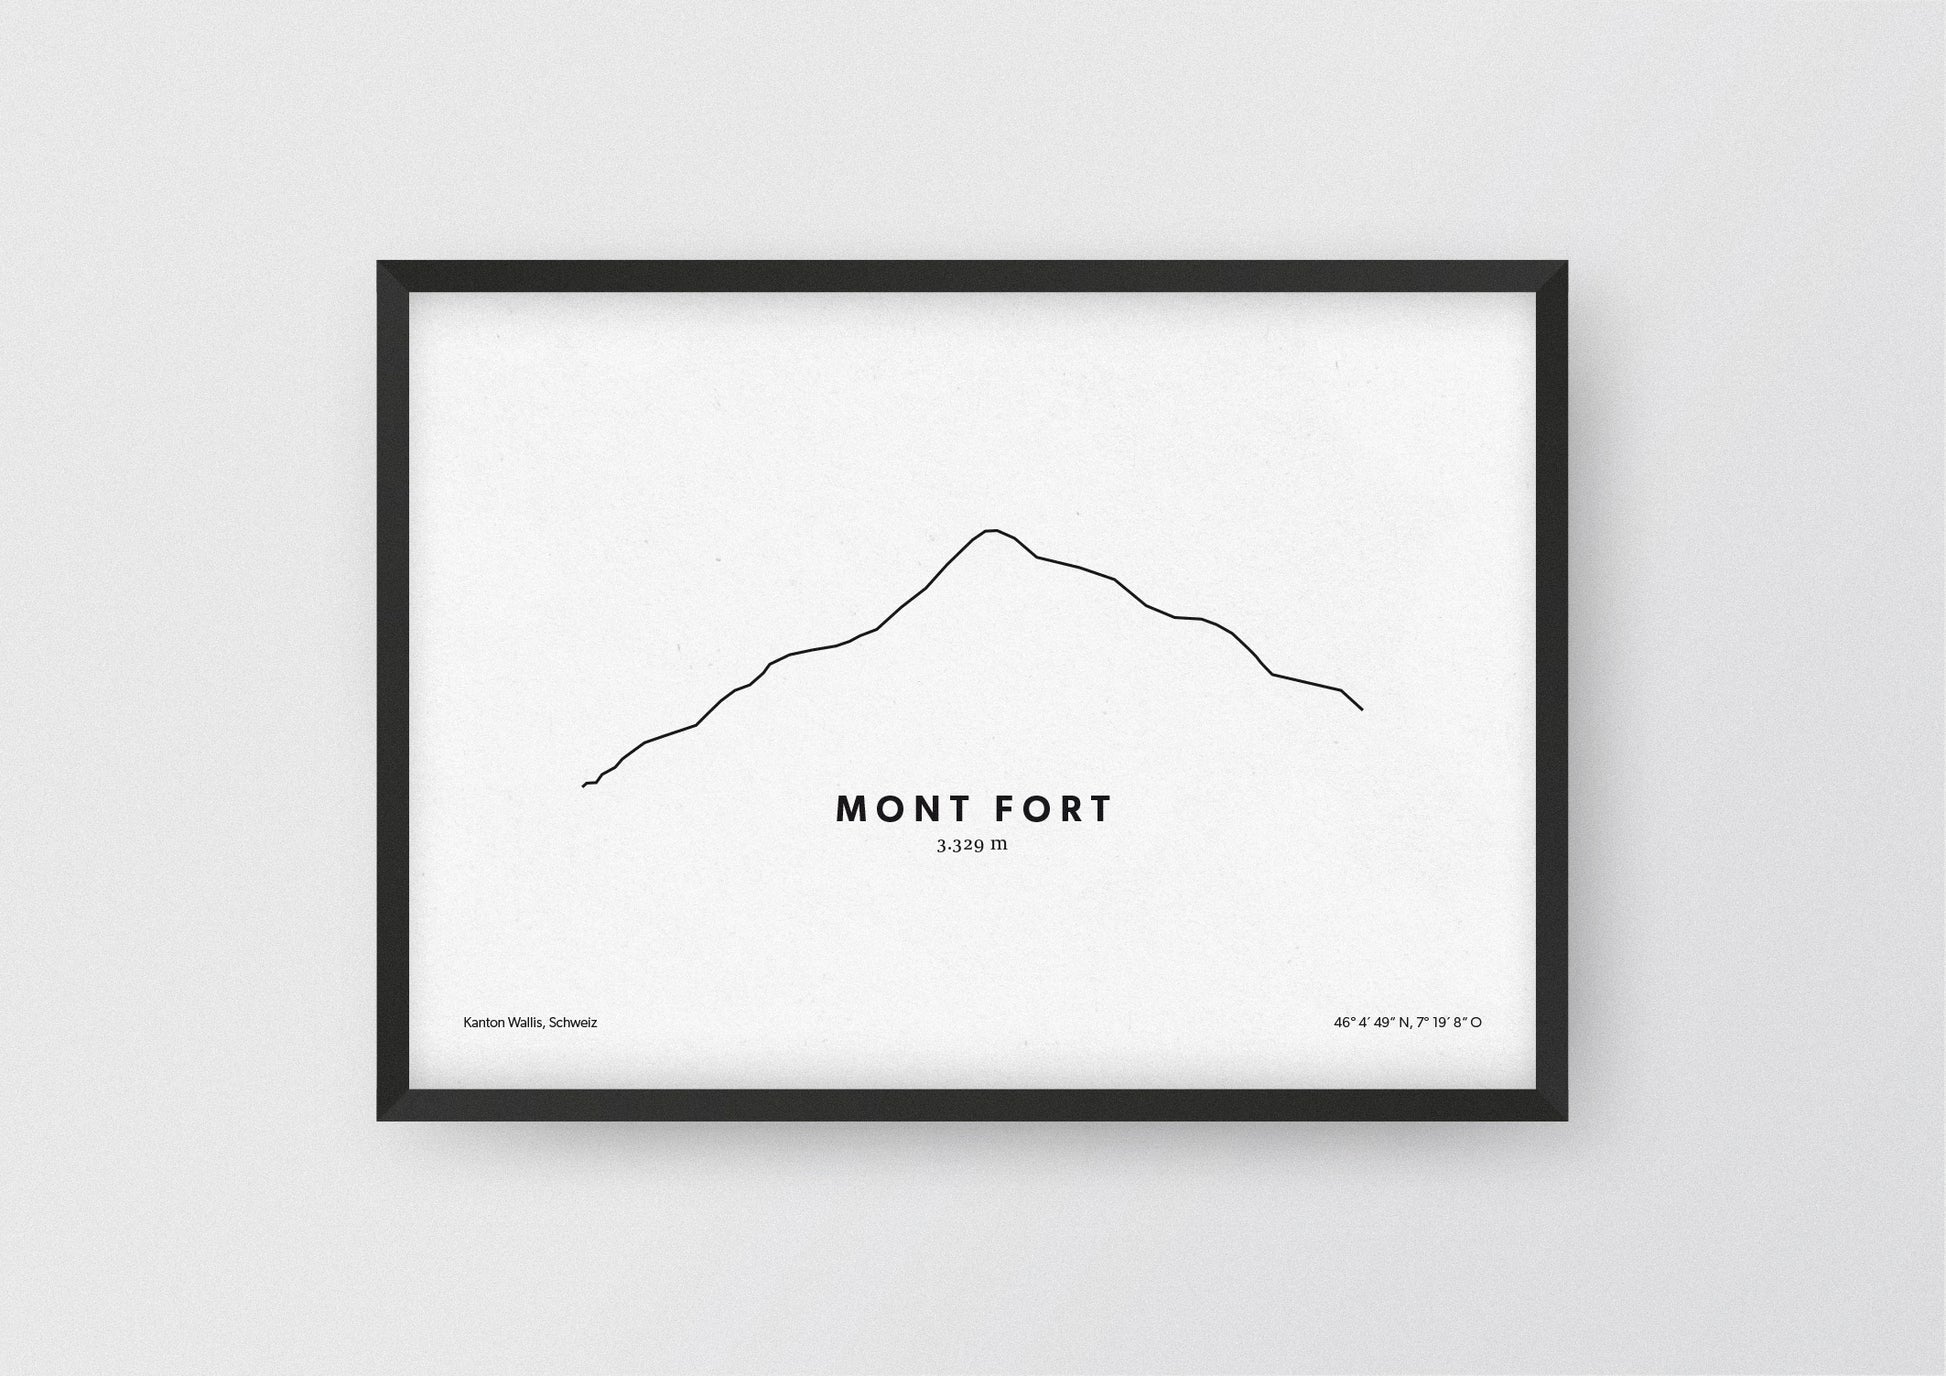 Minimalistische Illustration des Mont Fort in den Walliser Alpen, als stilvoller Einrichtungsgegenstand für Zuhause.